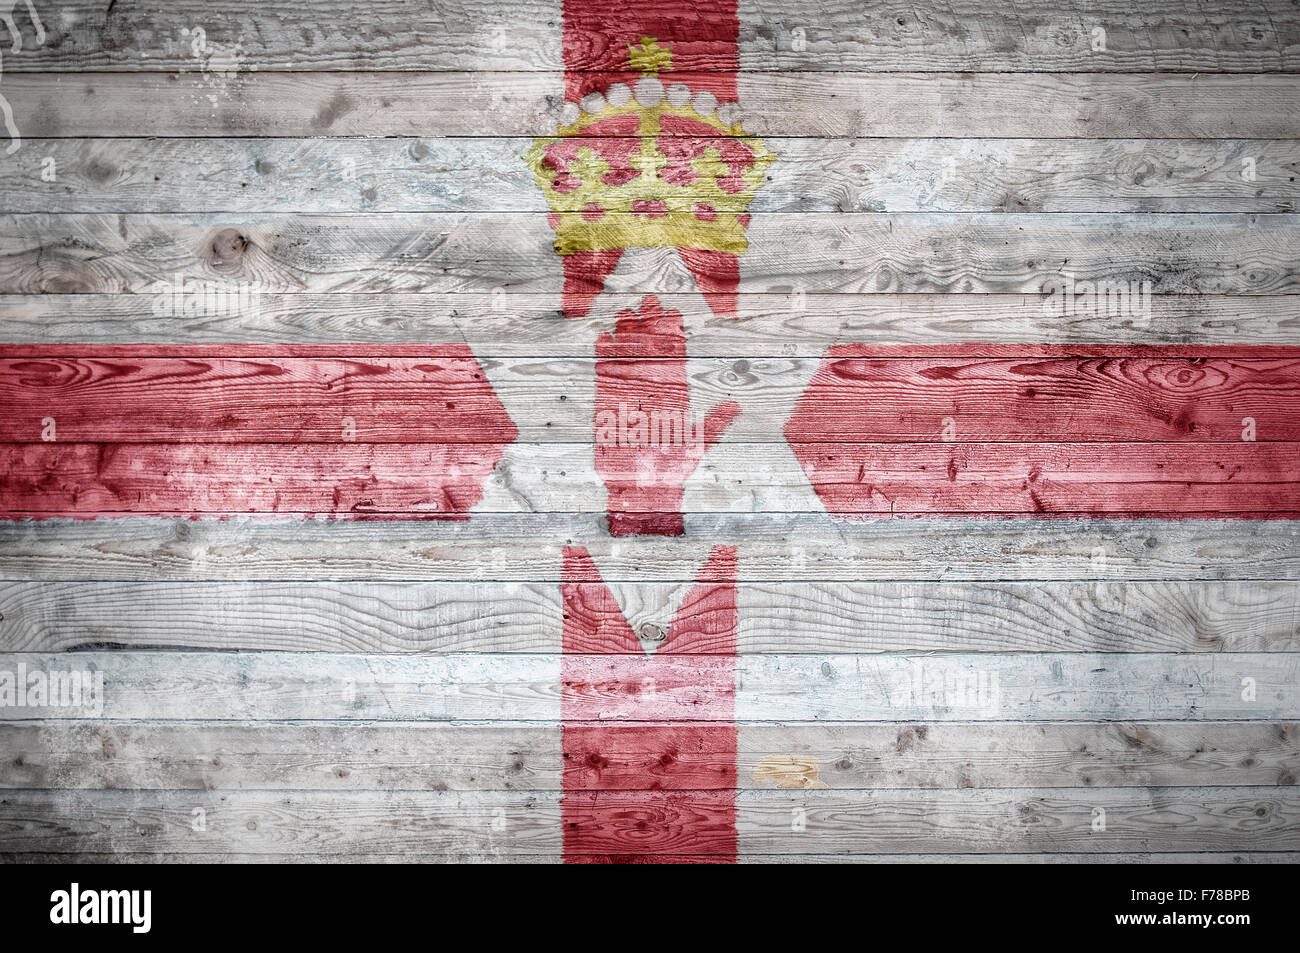 Une vignetted image de fond du drapeau de l'Irlande du Nord sur les planches de bois d'un mur ou le plancher. Banque D'Images